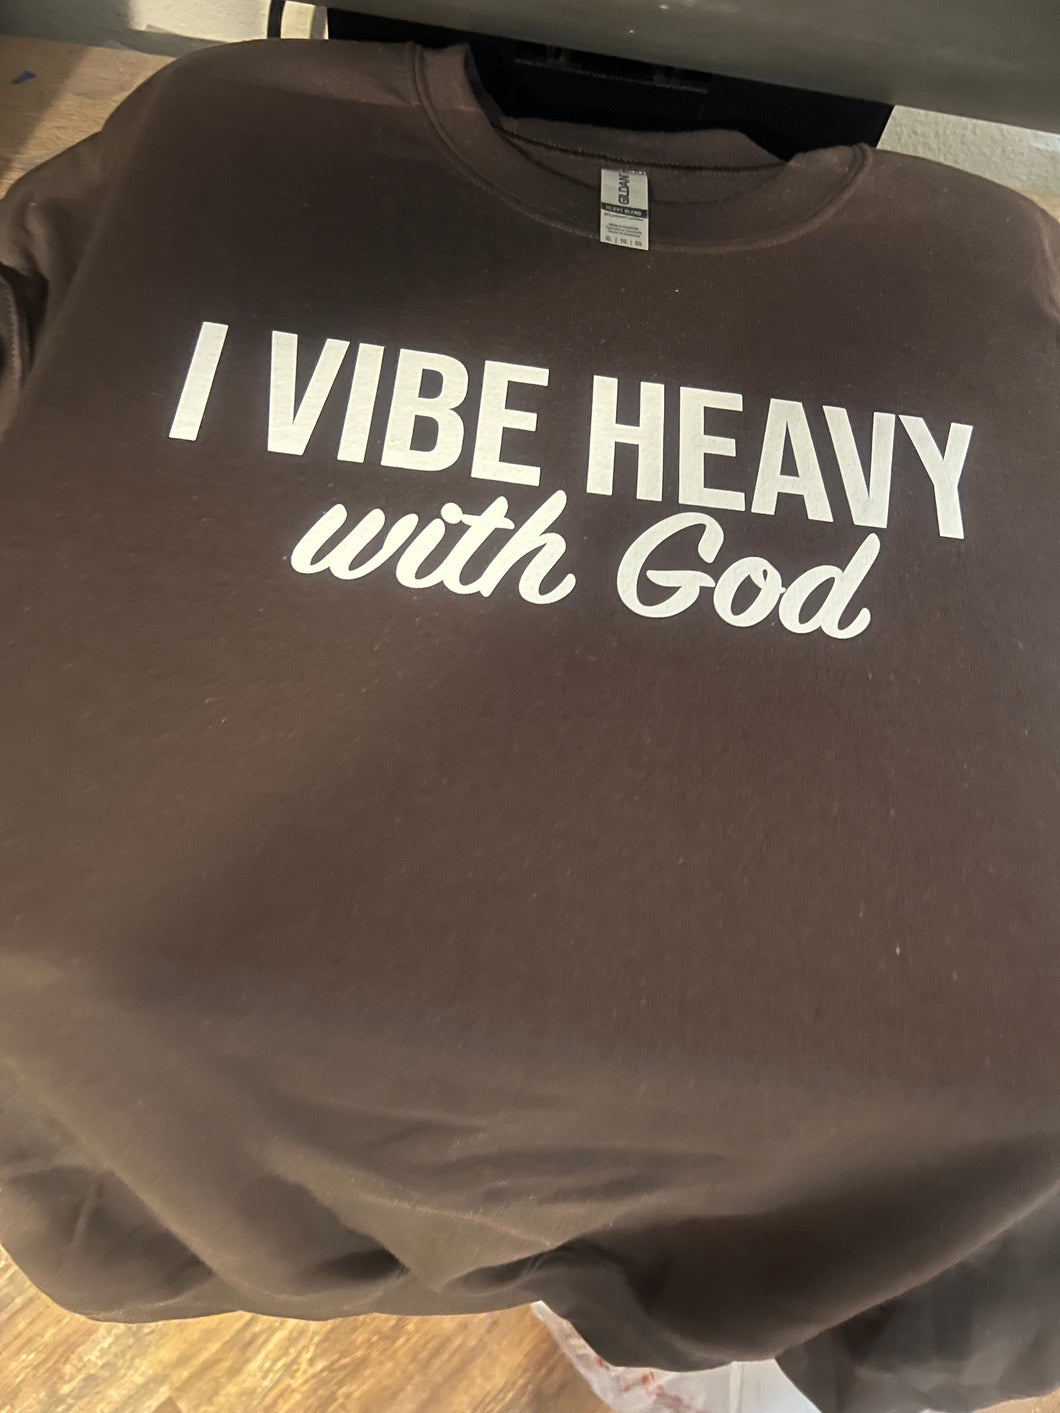 I vibe heavy with God